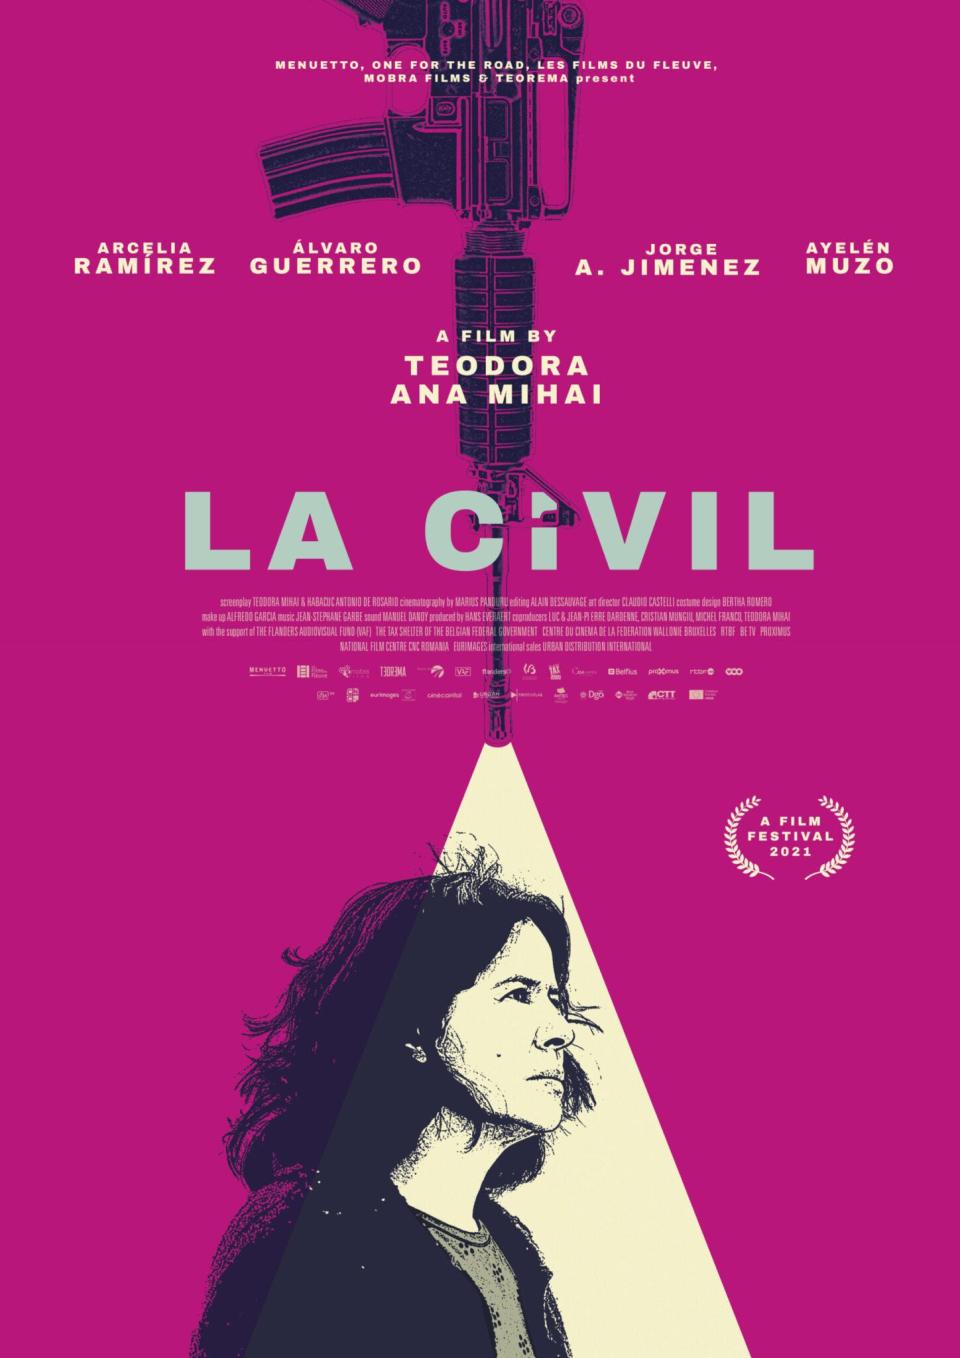 "La Civil" will screen on Sept. 10.